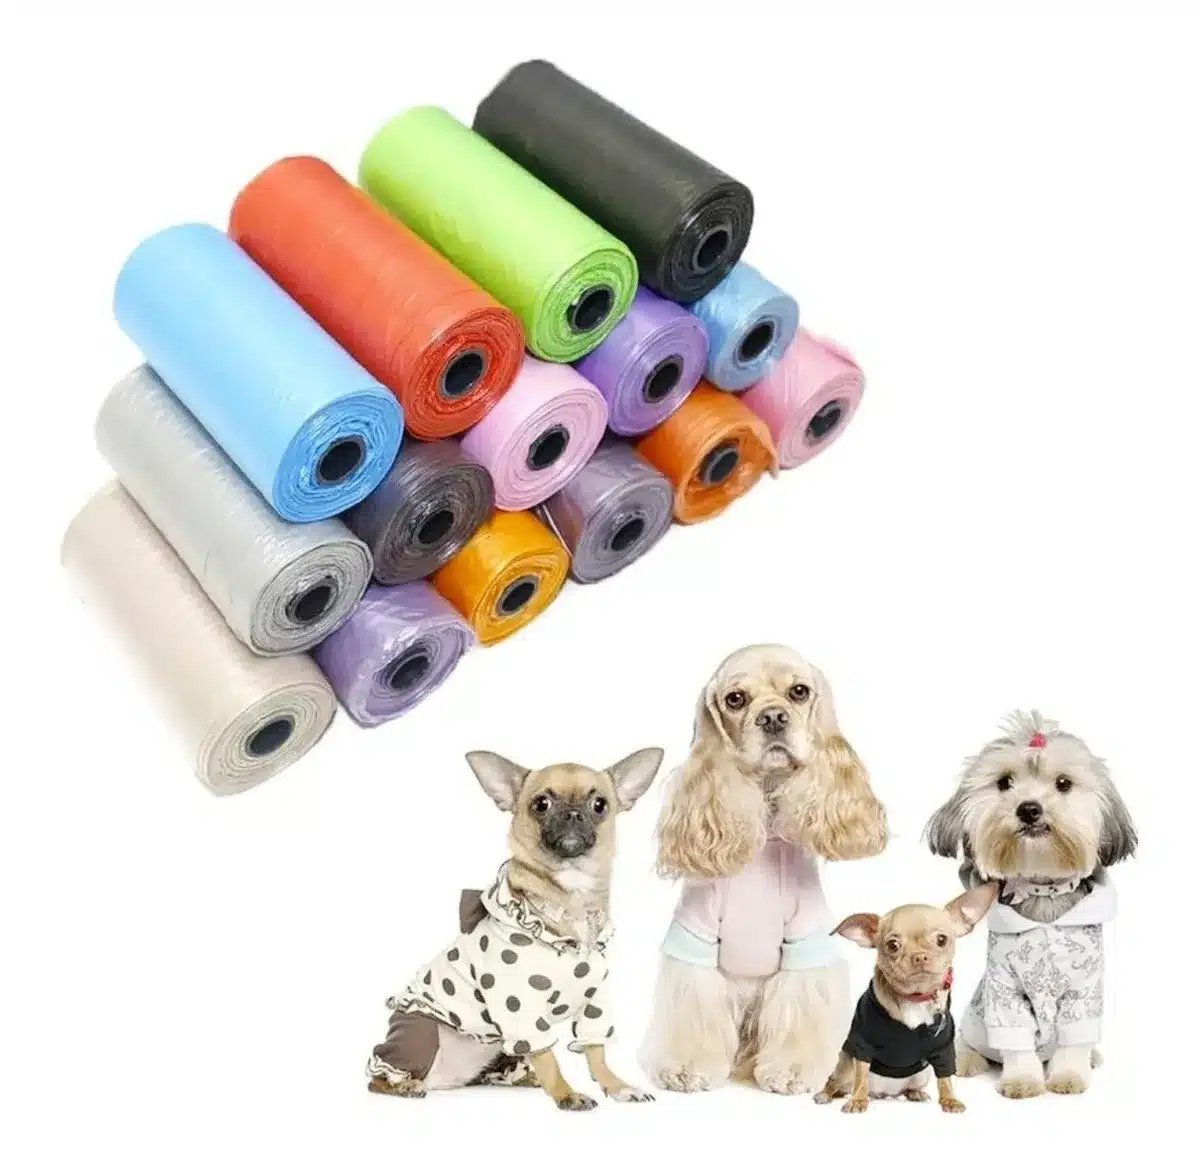  Bolsas de excremento de perro al por mayor Bolsas desechables  de residuos para mascotas con dispensador 120 bolsas 8 rollos+1 dispensador  verde V08 : Productos para Animales